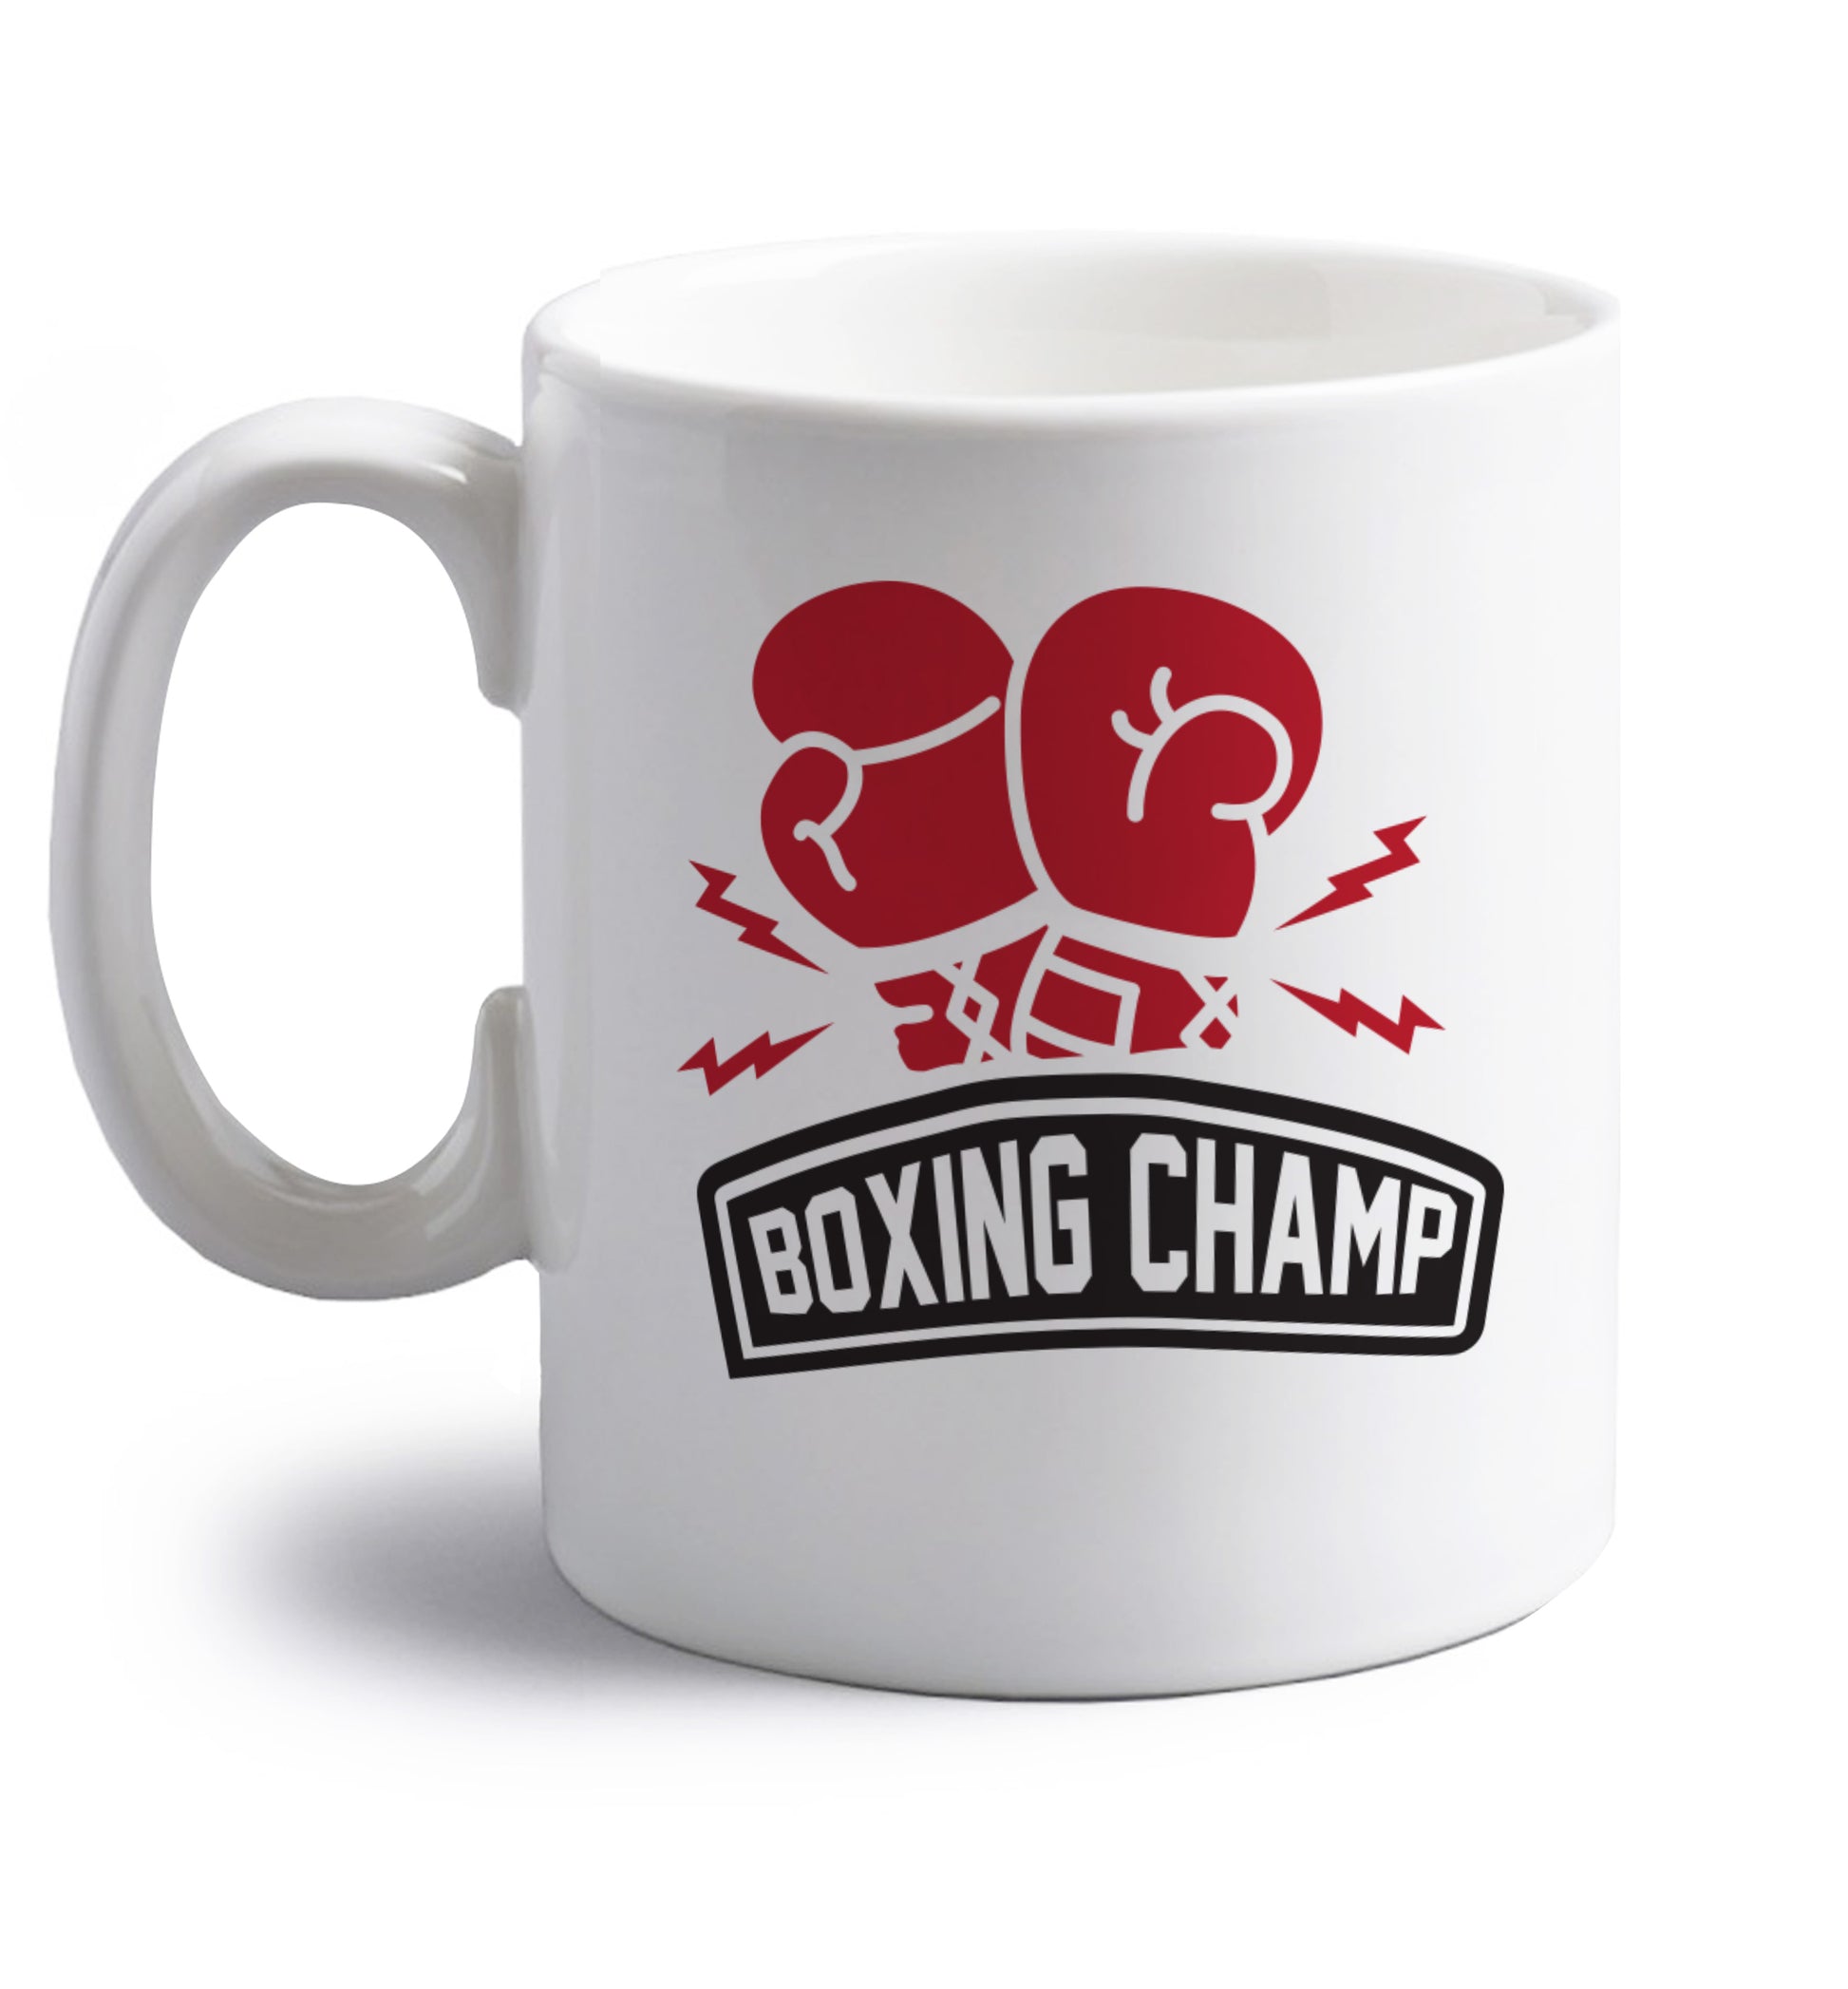 Boxing Champ right handed white ceramic mug 